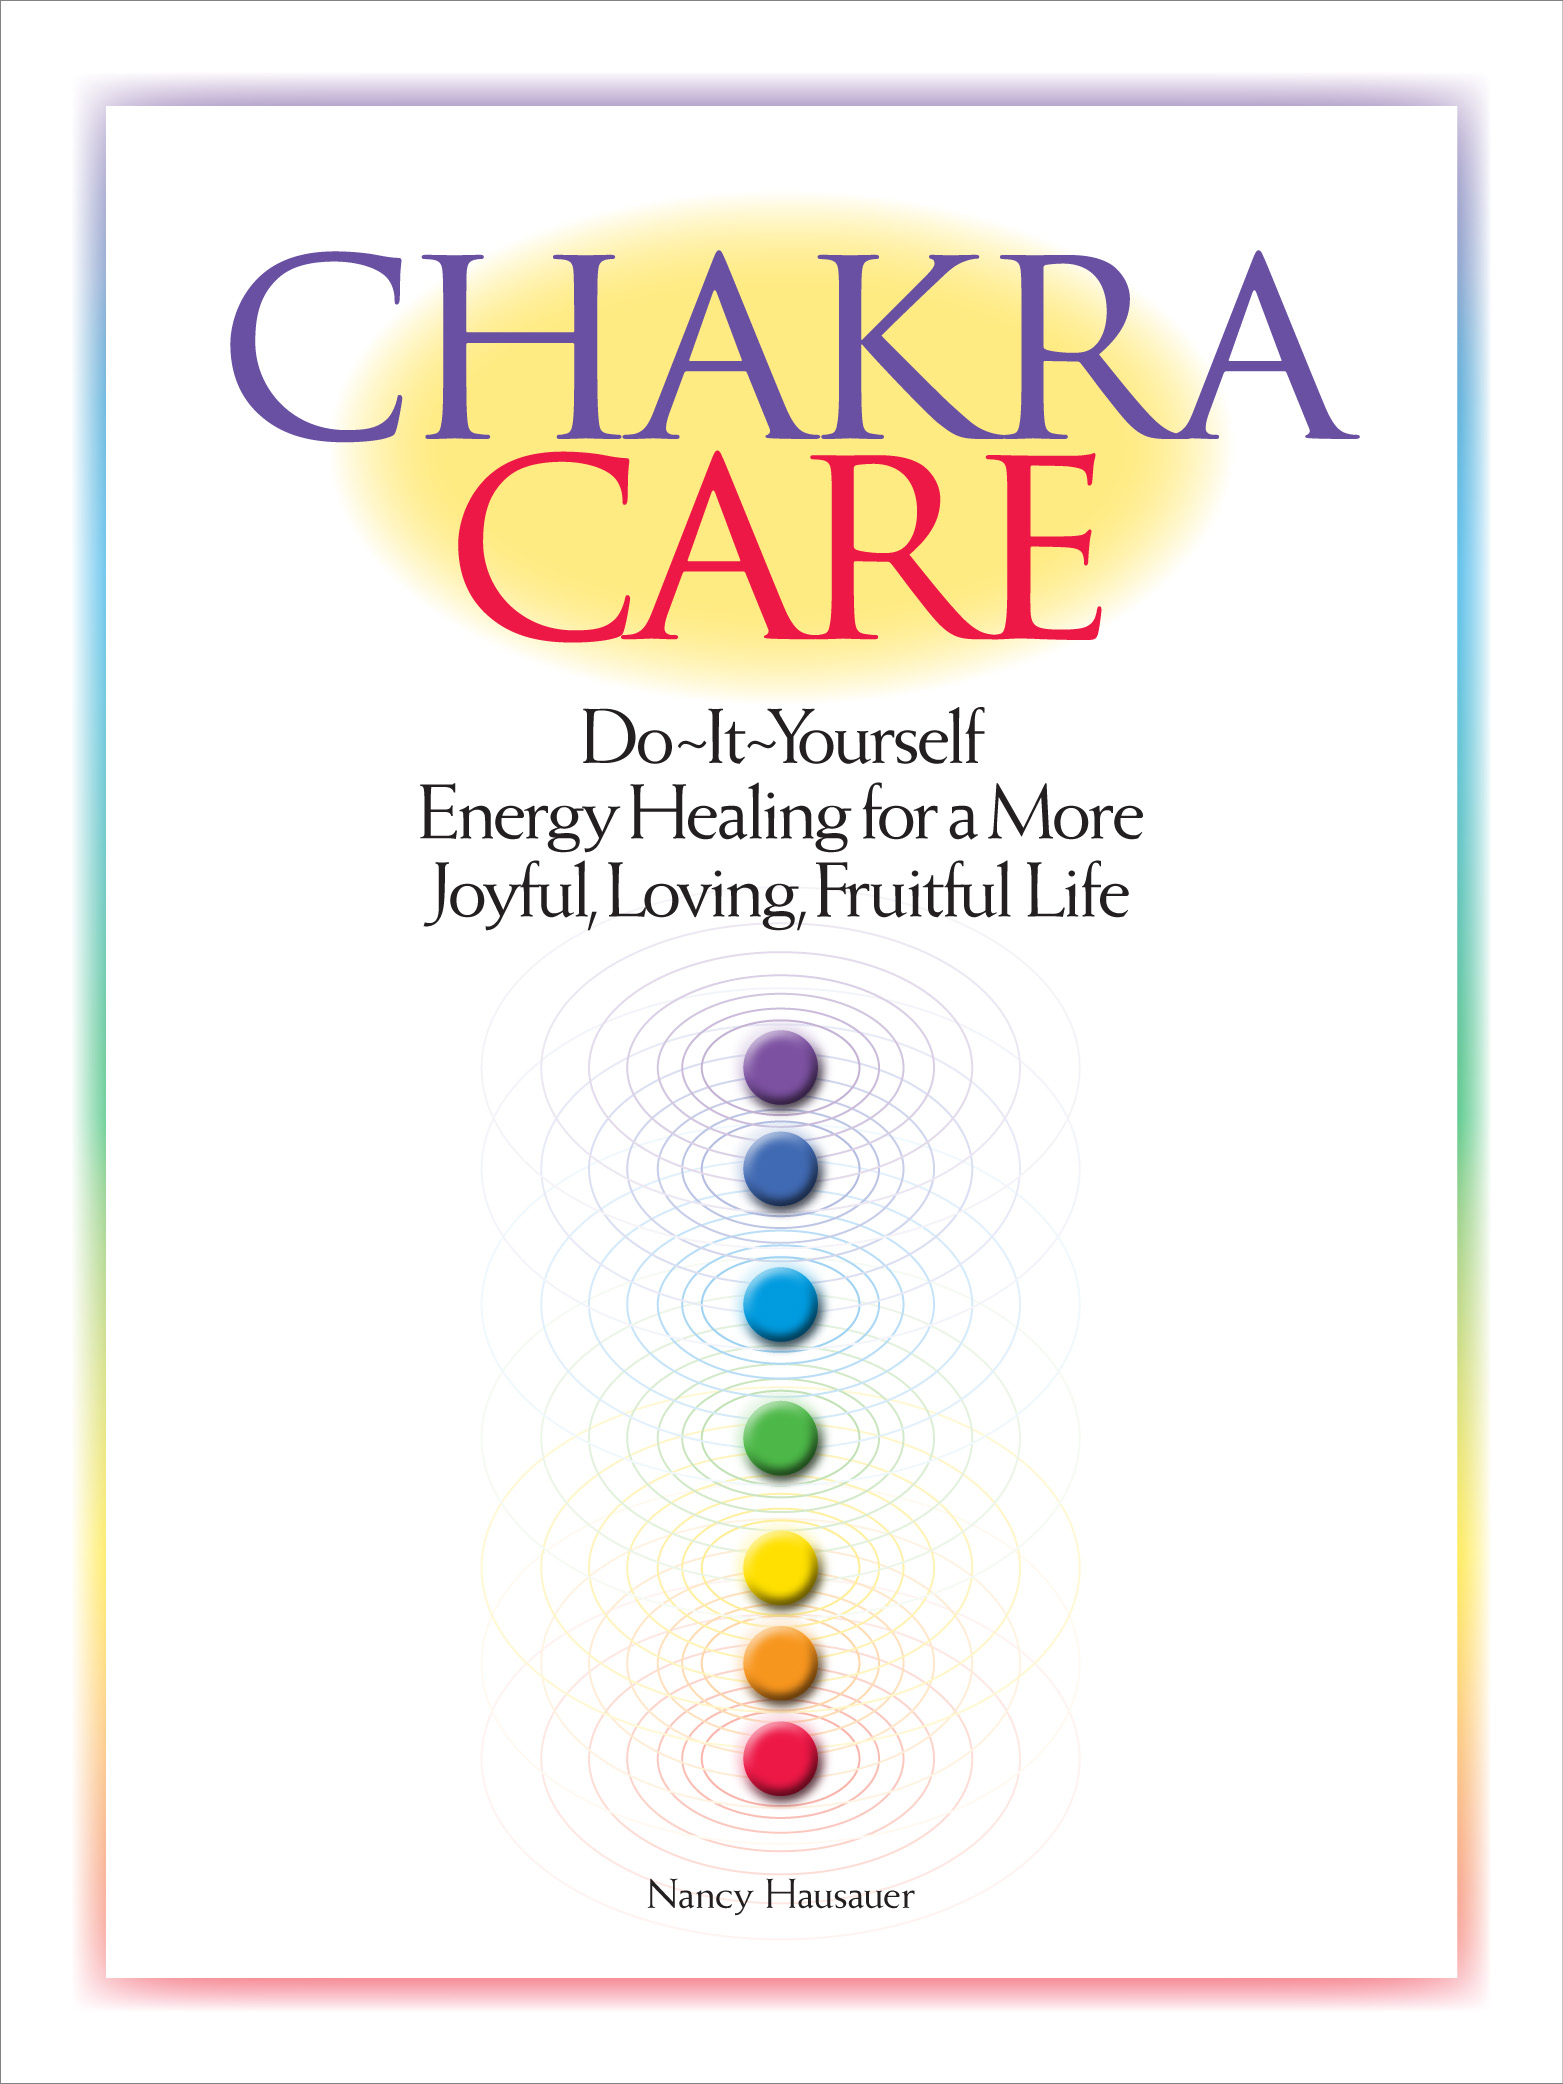 Chakra Care book